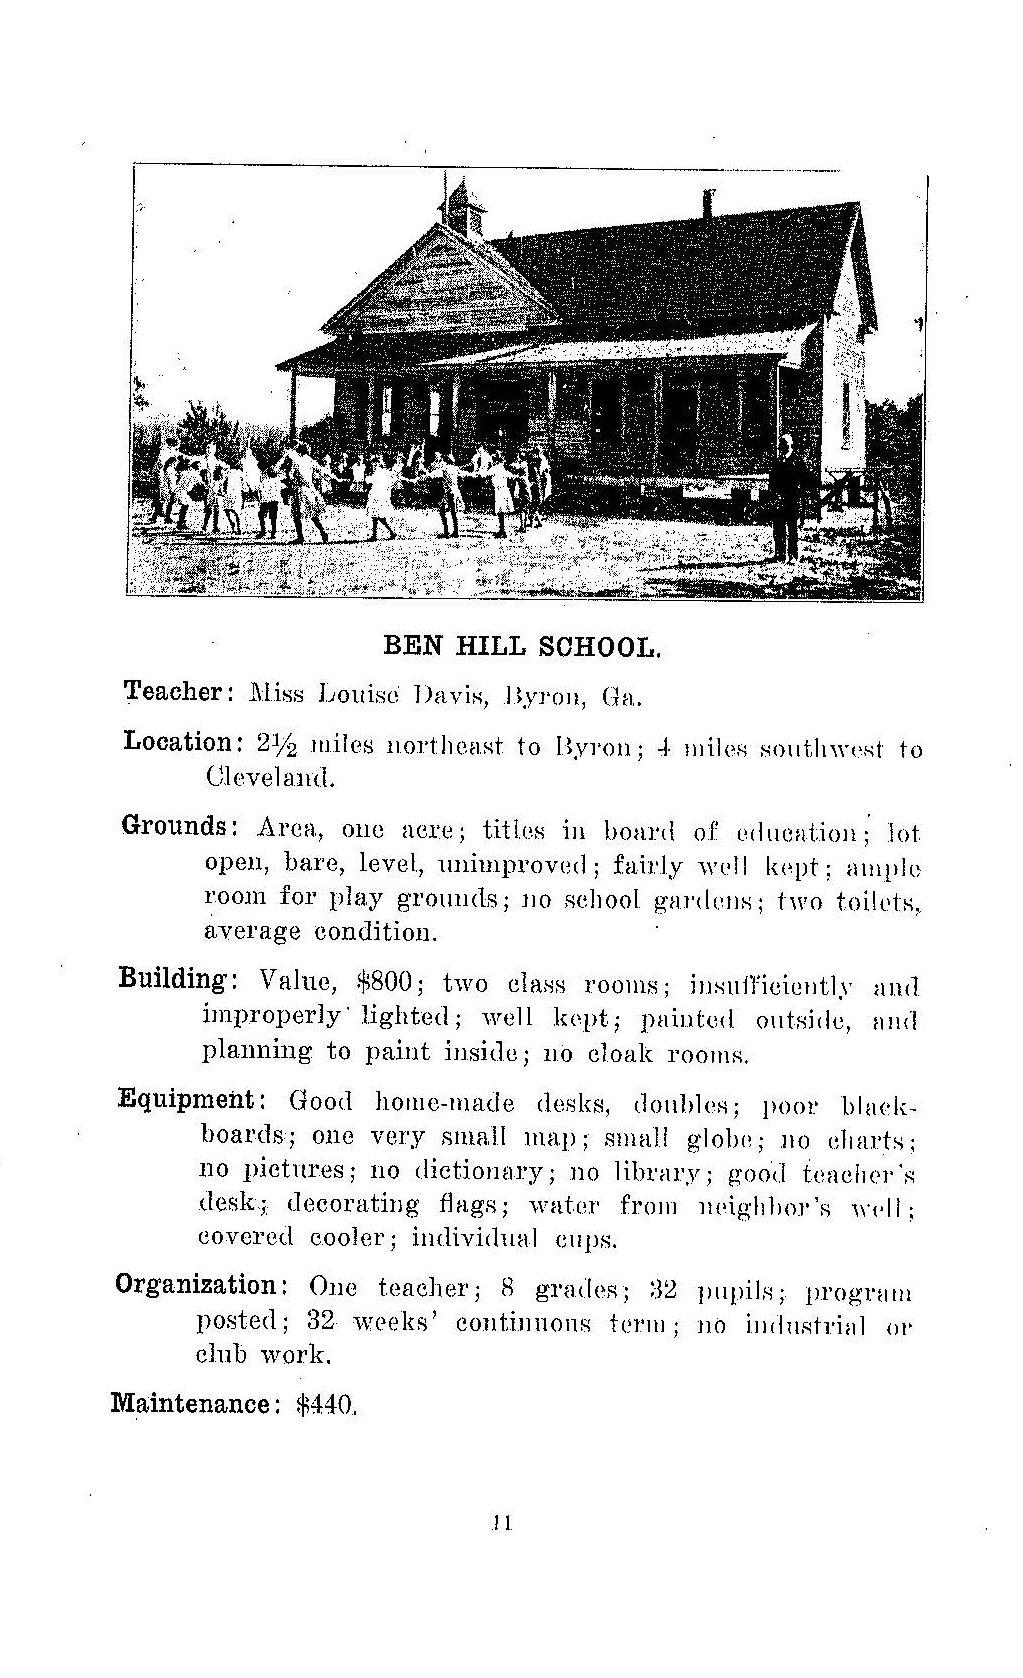 Ben Hill School